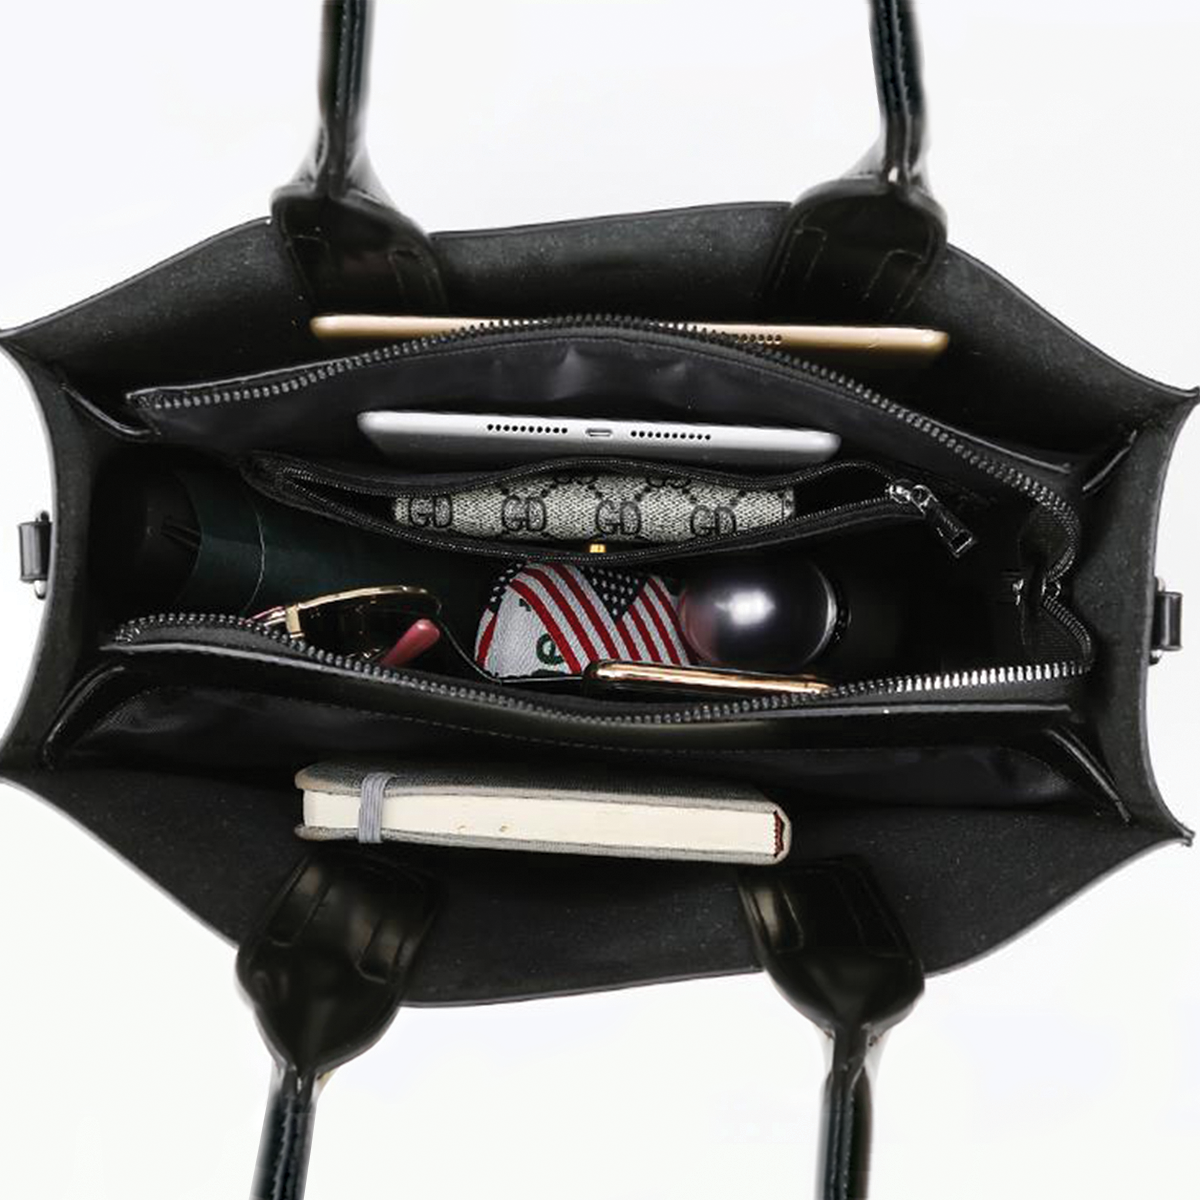 Jack Russell Terrier Luxury Handbag V2